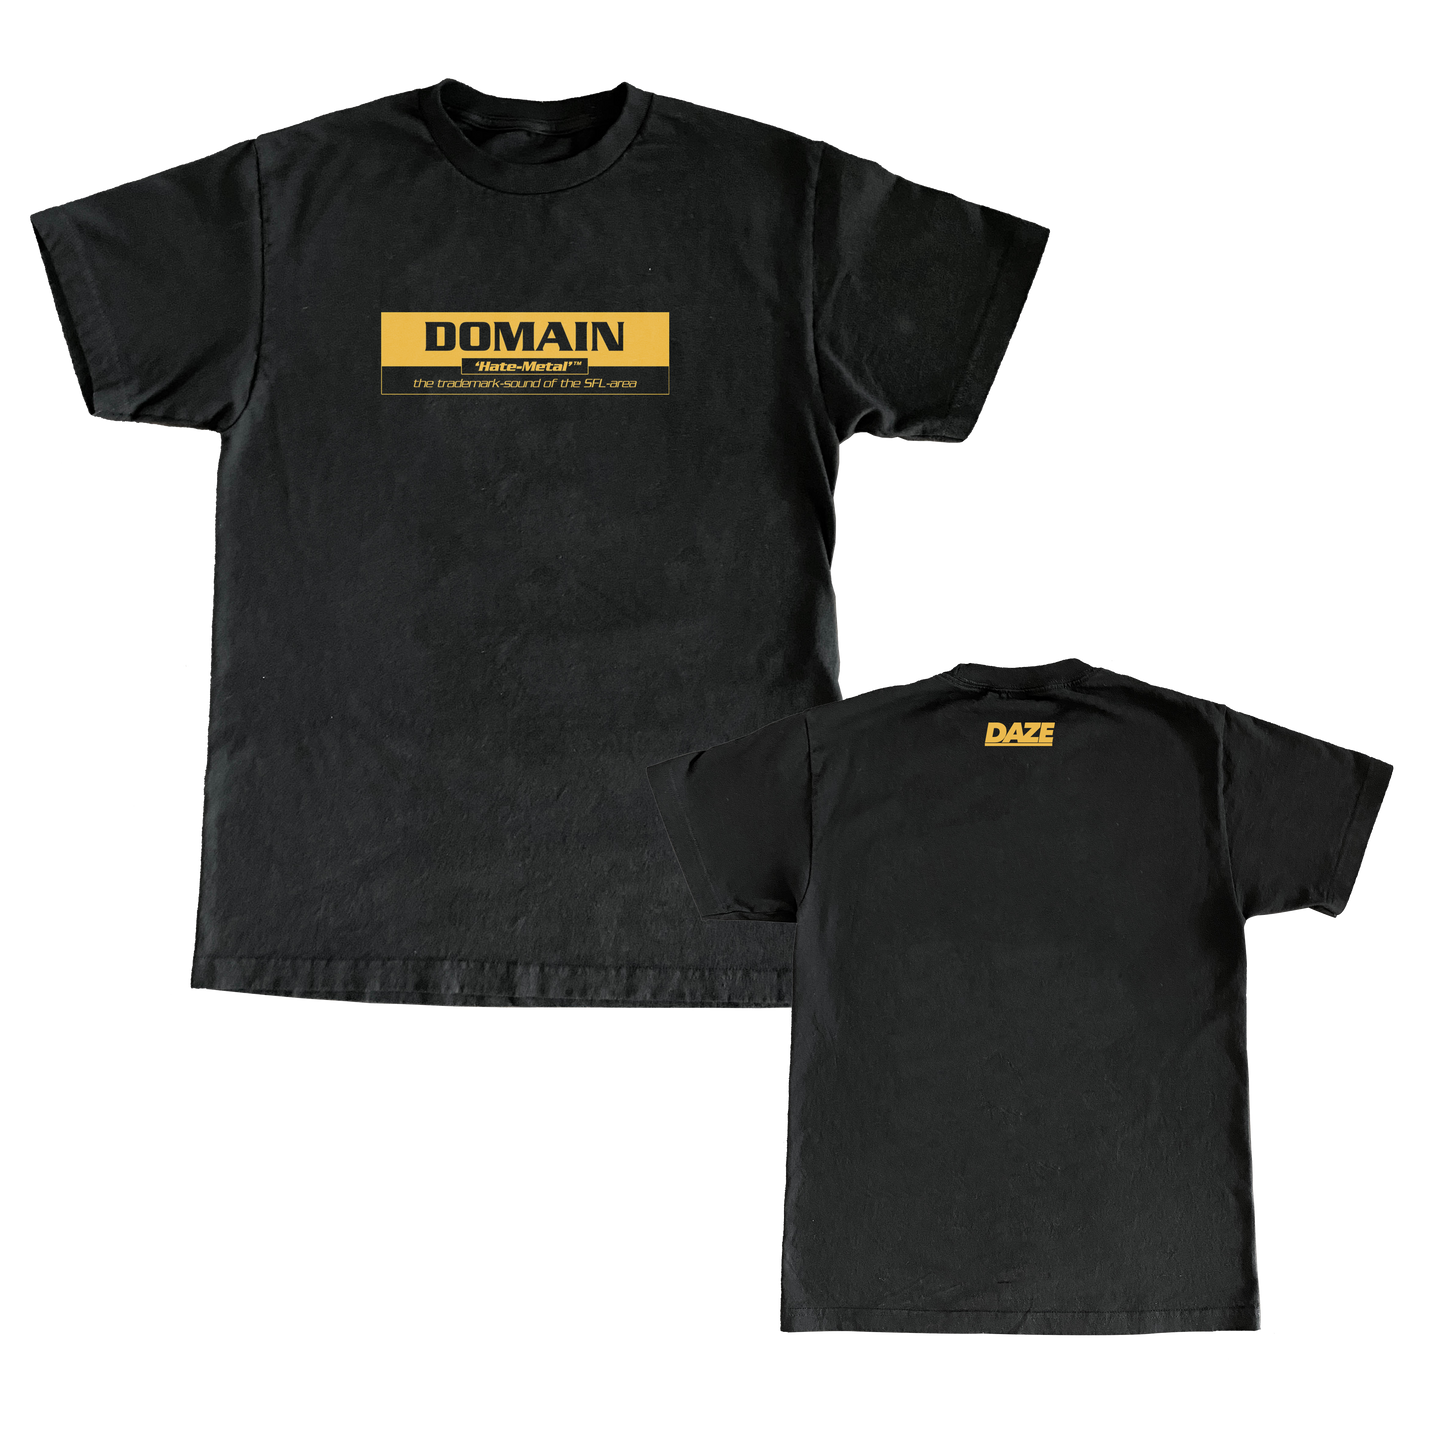 Domain - Hate Metal Shirt